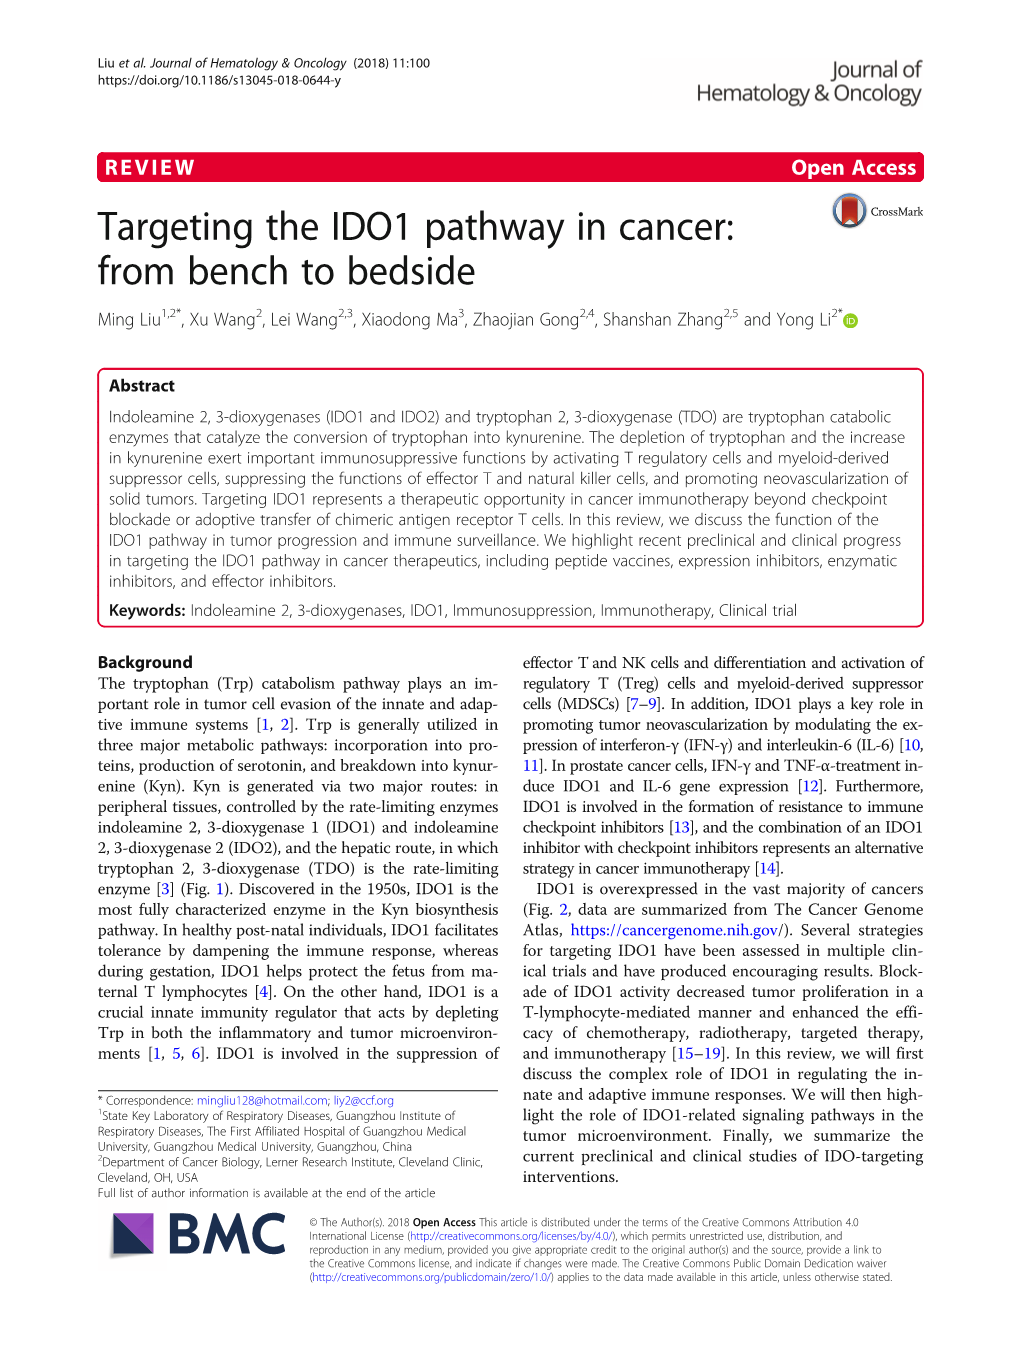 Targeting the IDO1 Pathway in Cancer: from Bench to Bedside Ming Liu1,2*, Xu Wang2, Lei Wang2,3, Xiaodong Ma3, Zhaojian Gong2,4, Shanshan Zhang2,5 and Yong Li2*